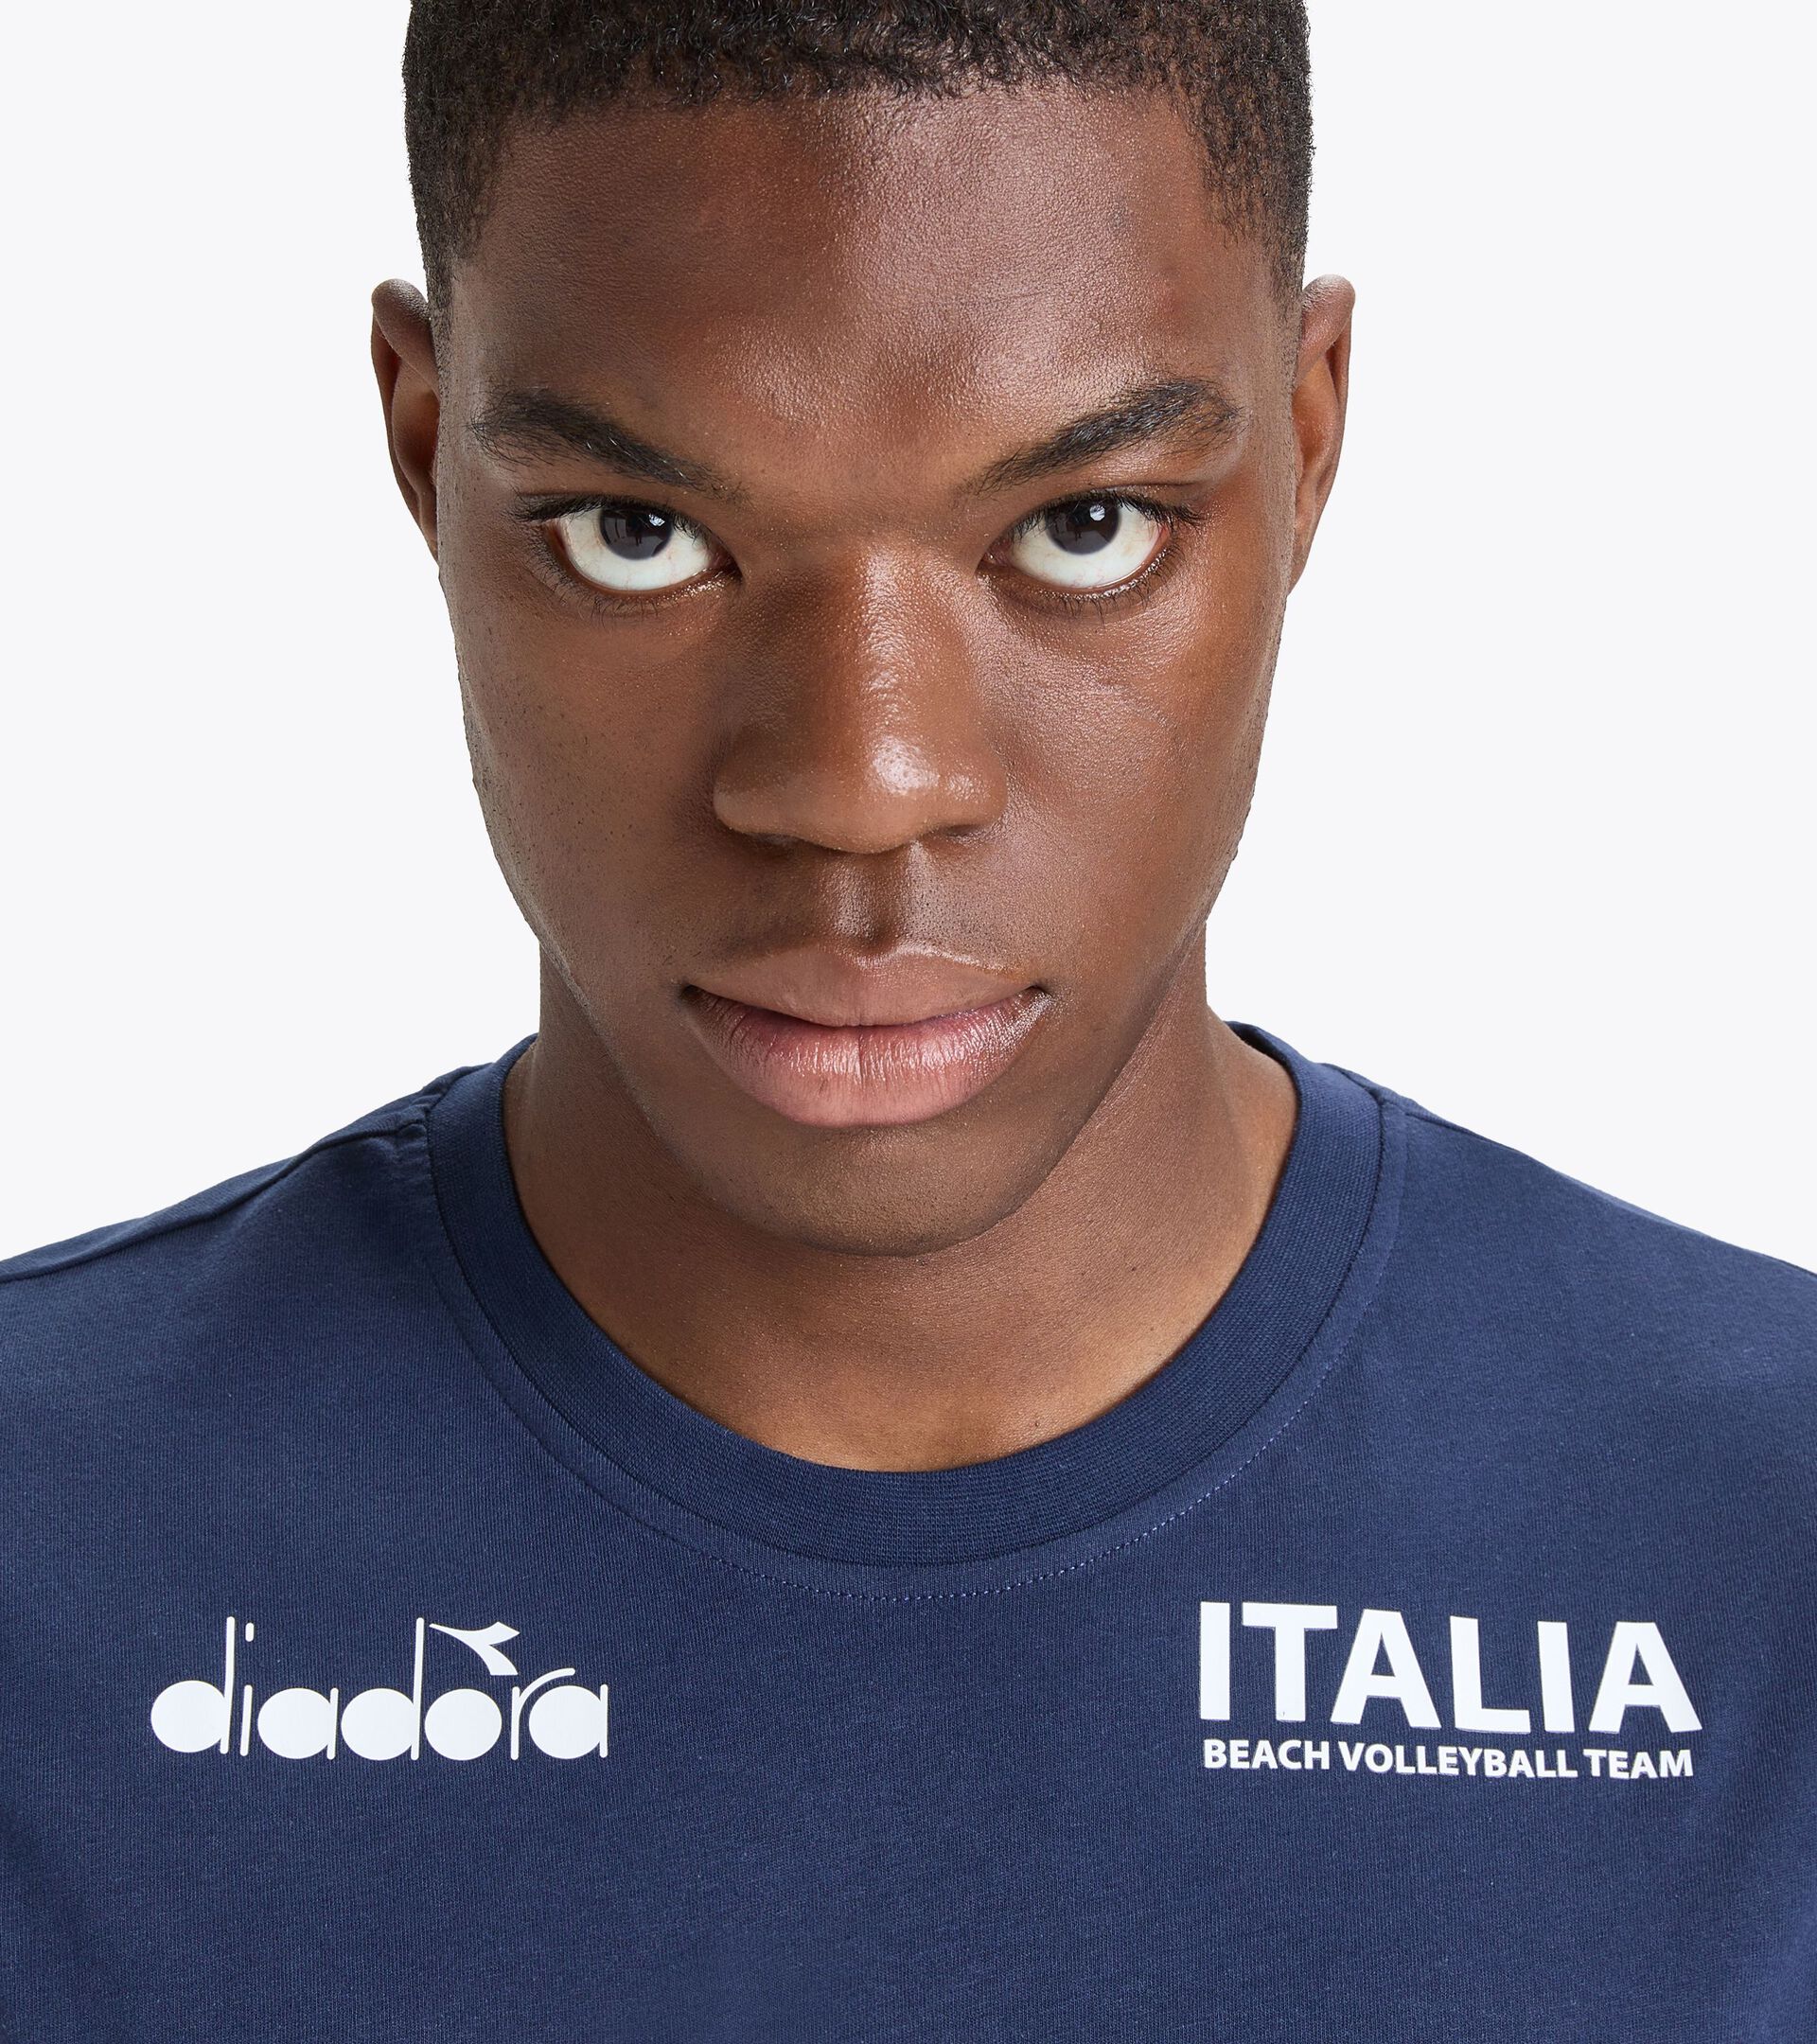 Sleeveless shirt Men - Italy National Volleyball Team SLEEVELESS ALLENAMENTO UOMO BV23 ITALIA CLASSIC NAVY - Diadora